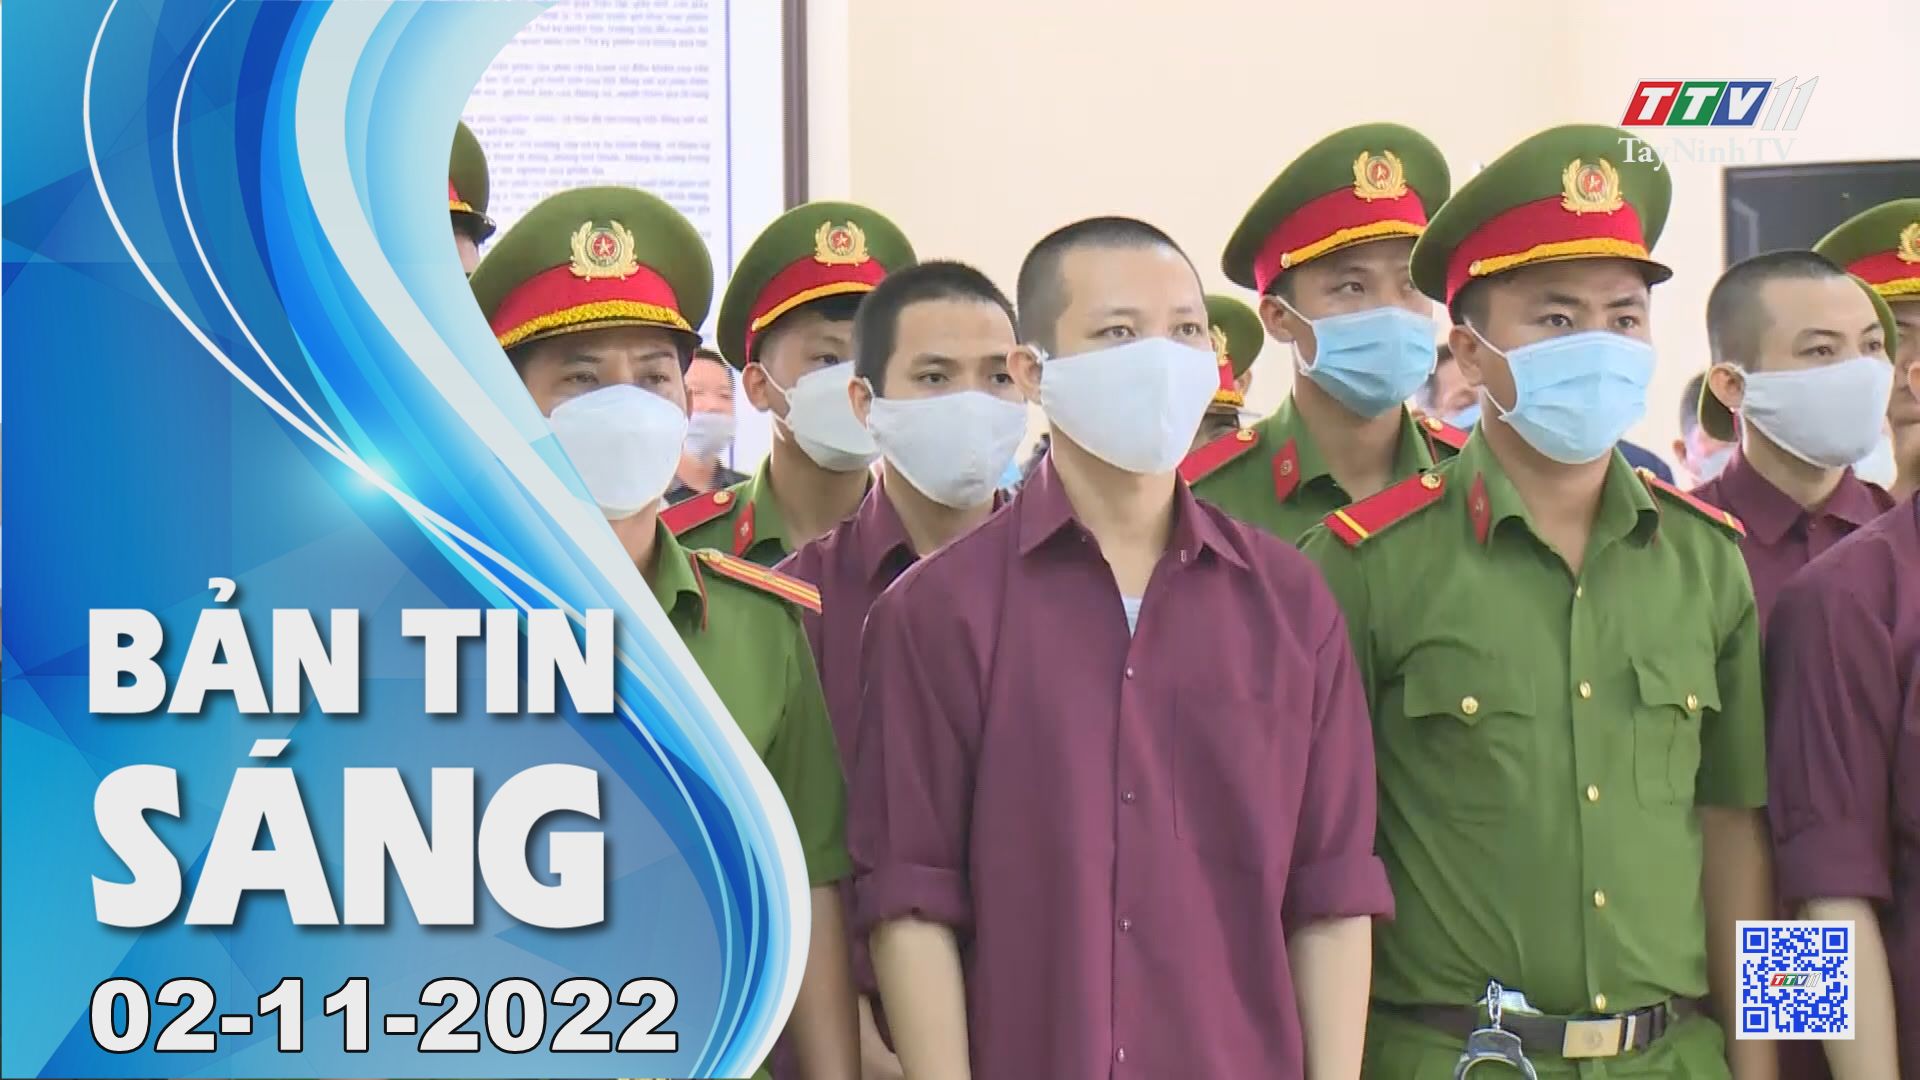 Bản tin sáng 02-11-2022 | Tin tức hôm nay | TayNinhTV